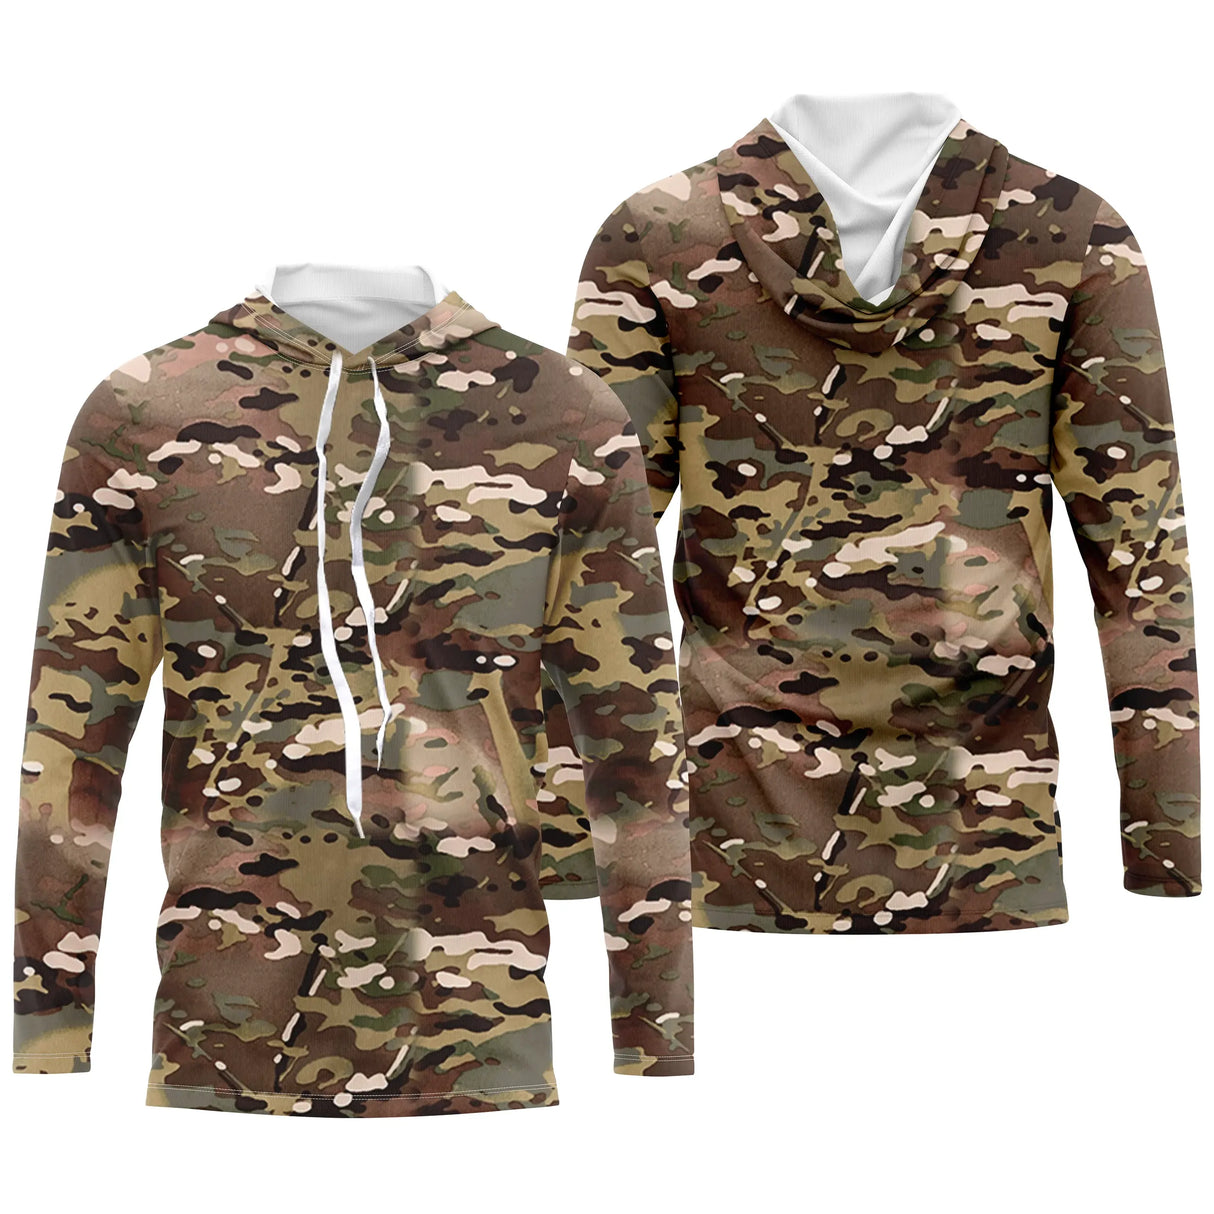 Vêtements Camouflage Pêche et Chasse, Cadeau Pêcheur, Chasseur, T-shirt Camouflage, Sweat à Capuche Anti-UV - CT06072231